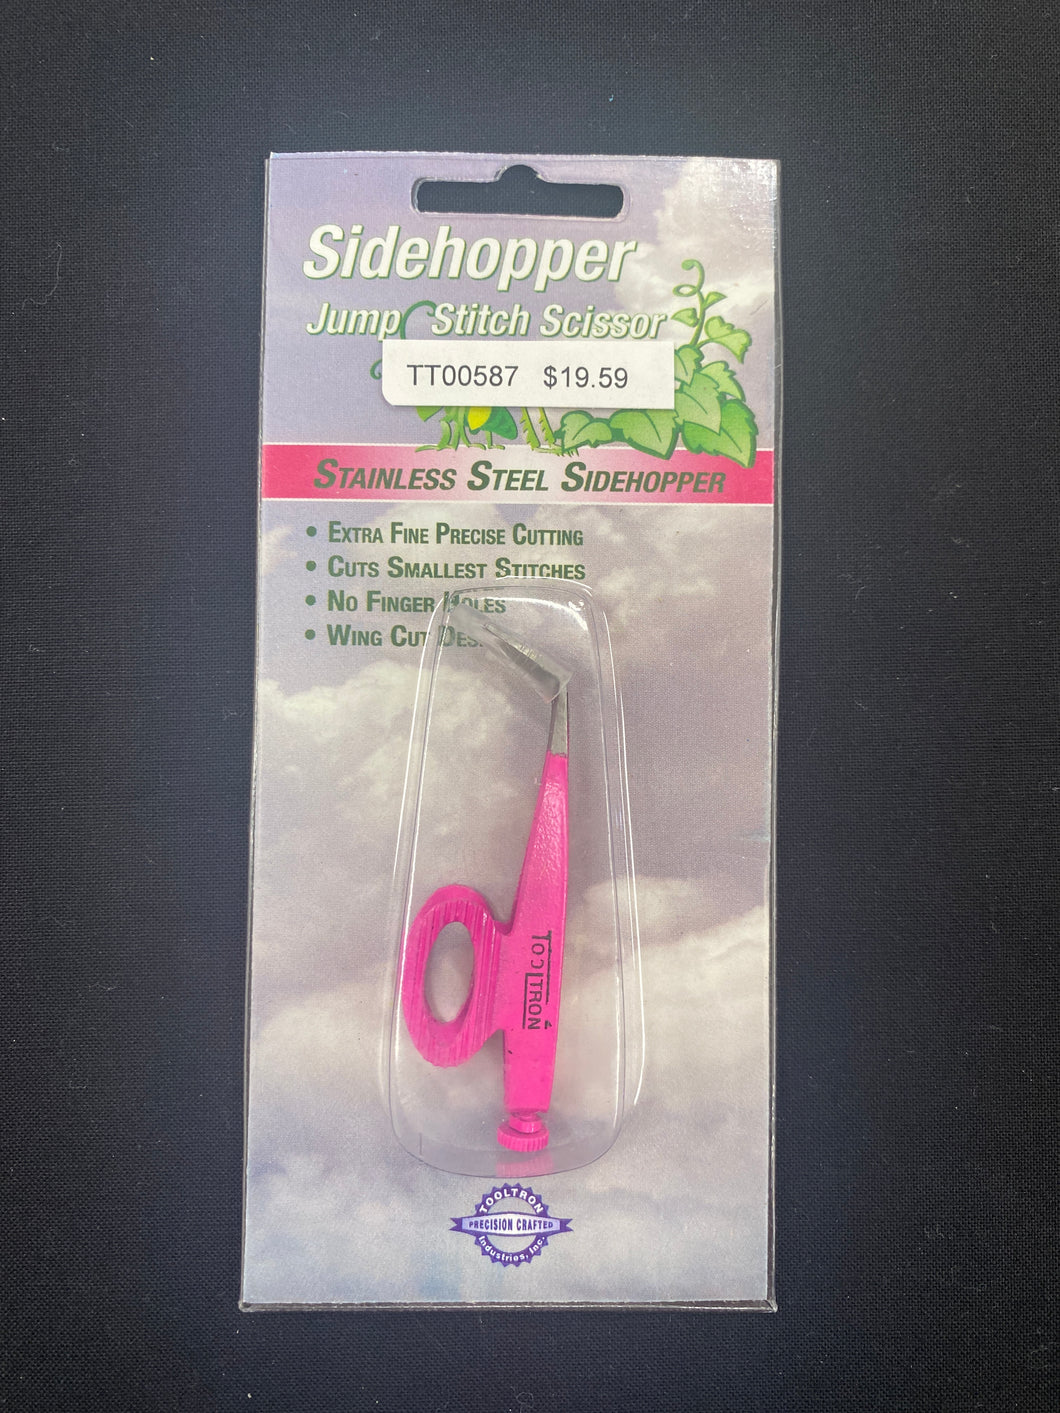 Side hopper Jump Stitch Scissors